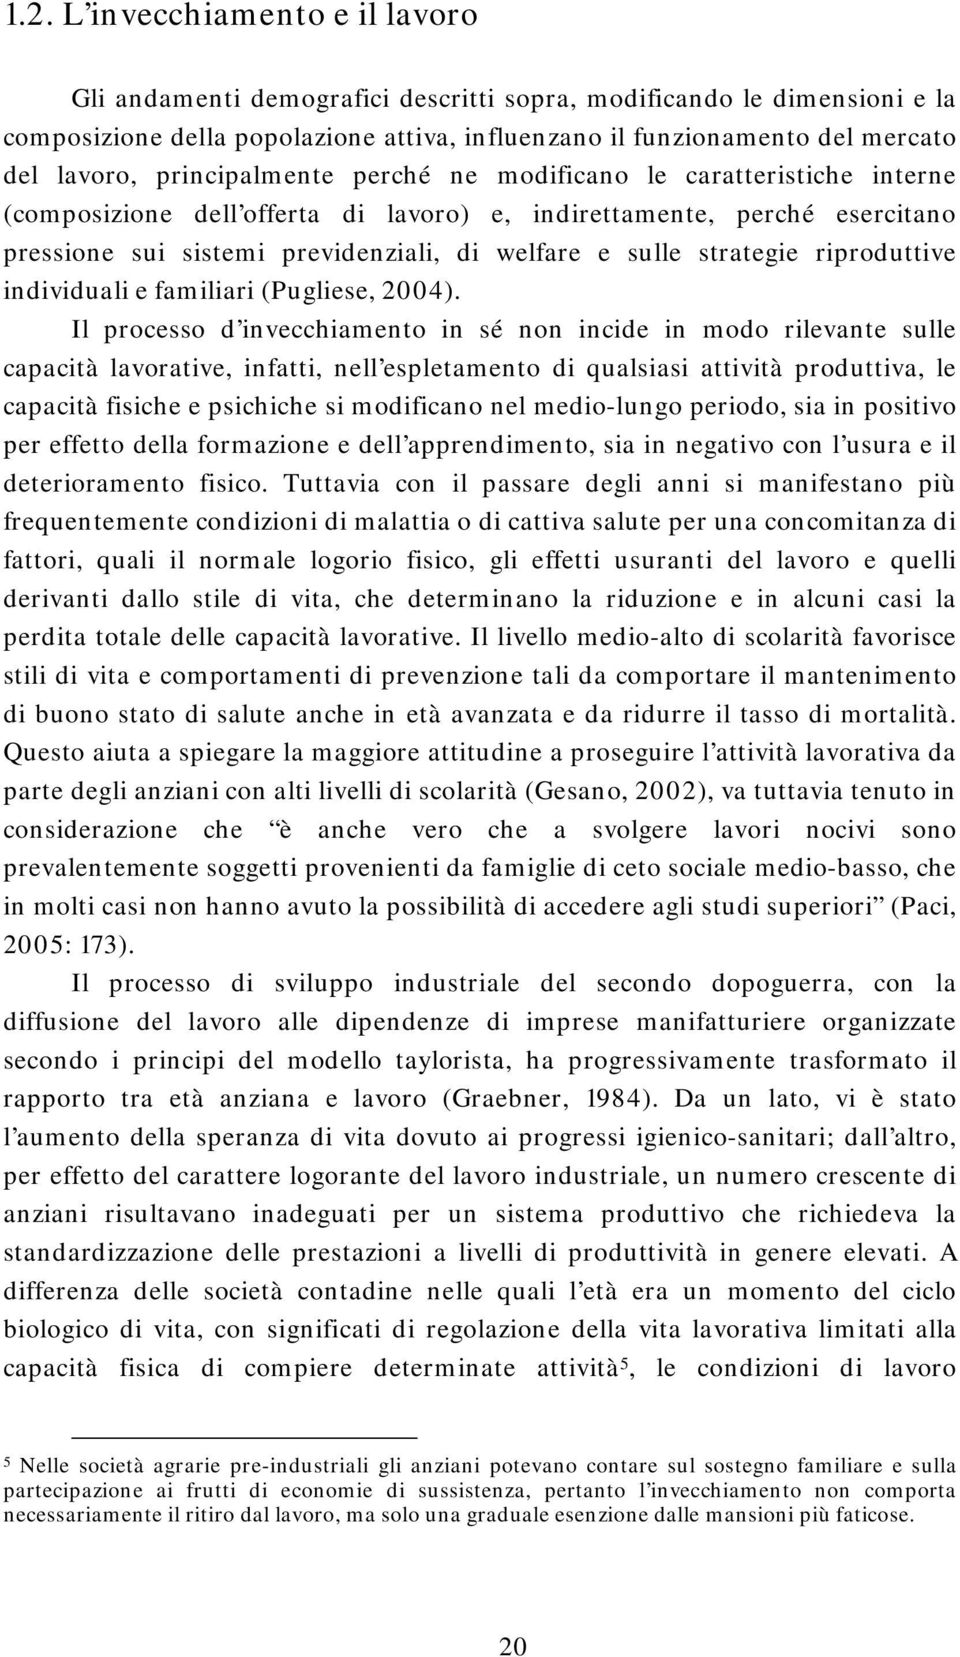 strategie riproduttive individuali e familiari (Pugliese, 2004).